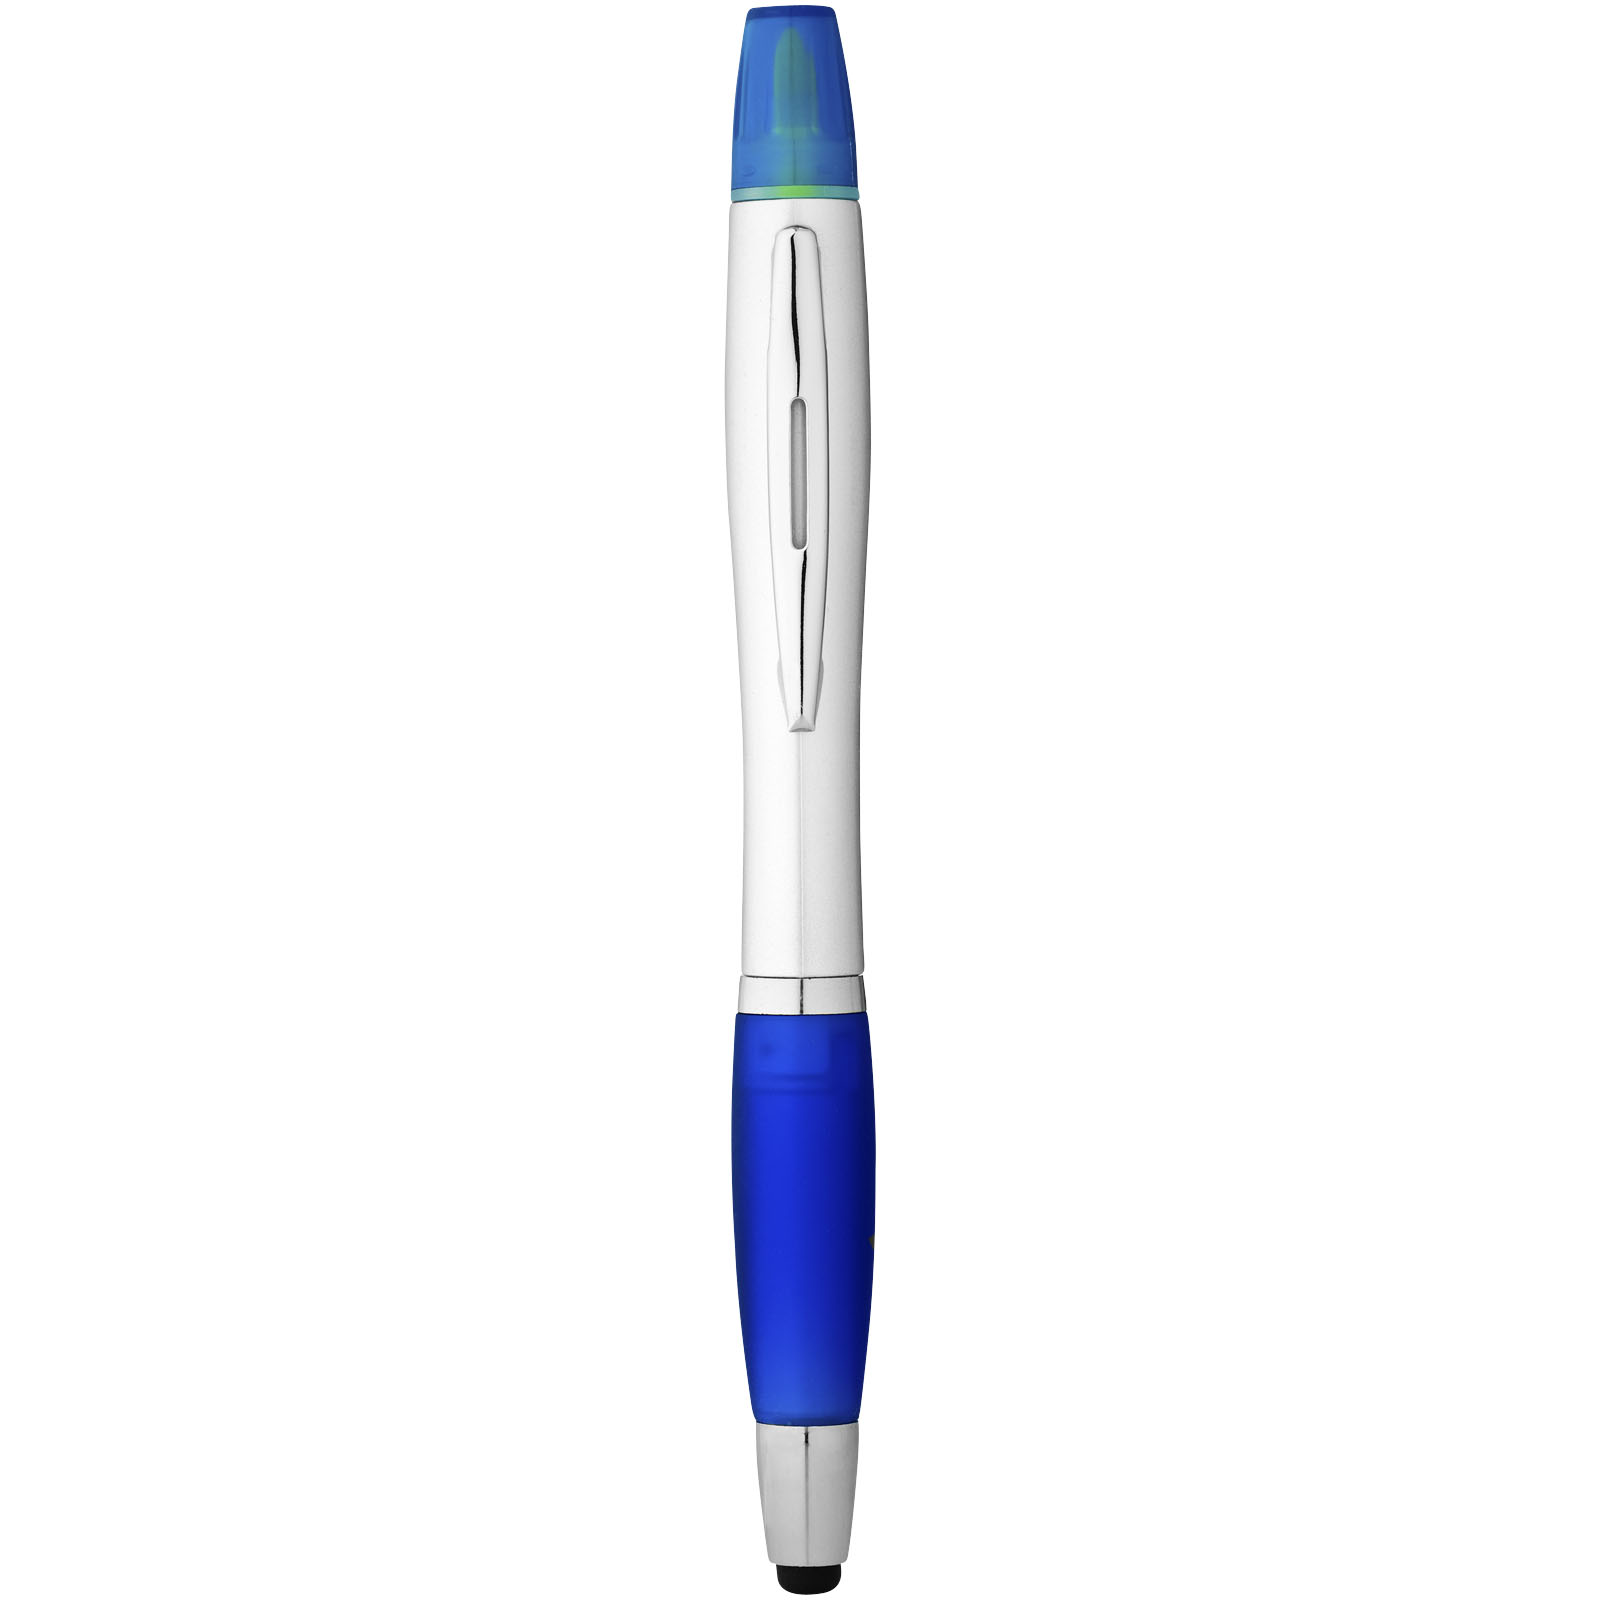 Advertising Ballpoint Pens - Nash stylus ballpoint pen and highlighter